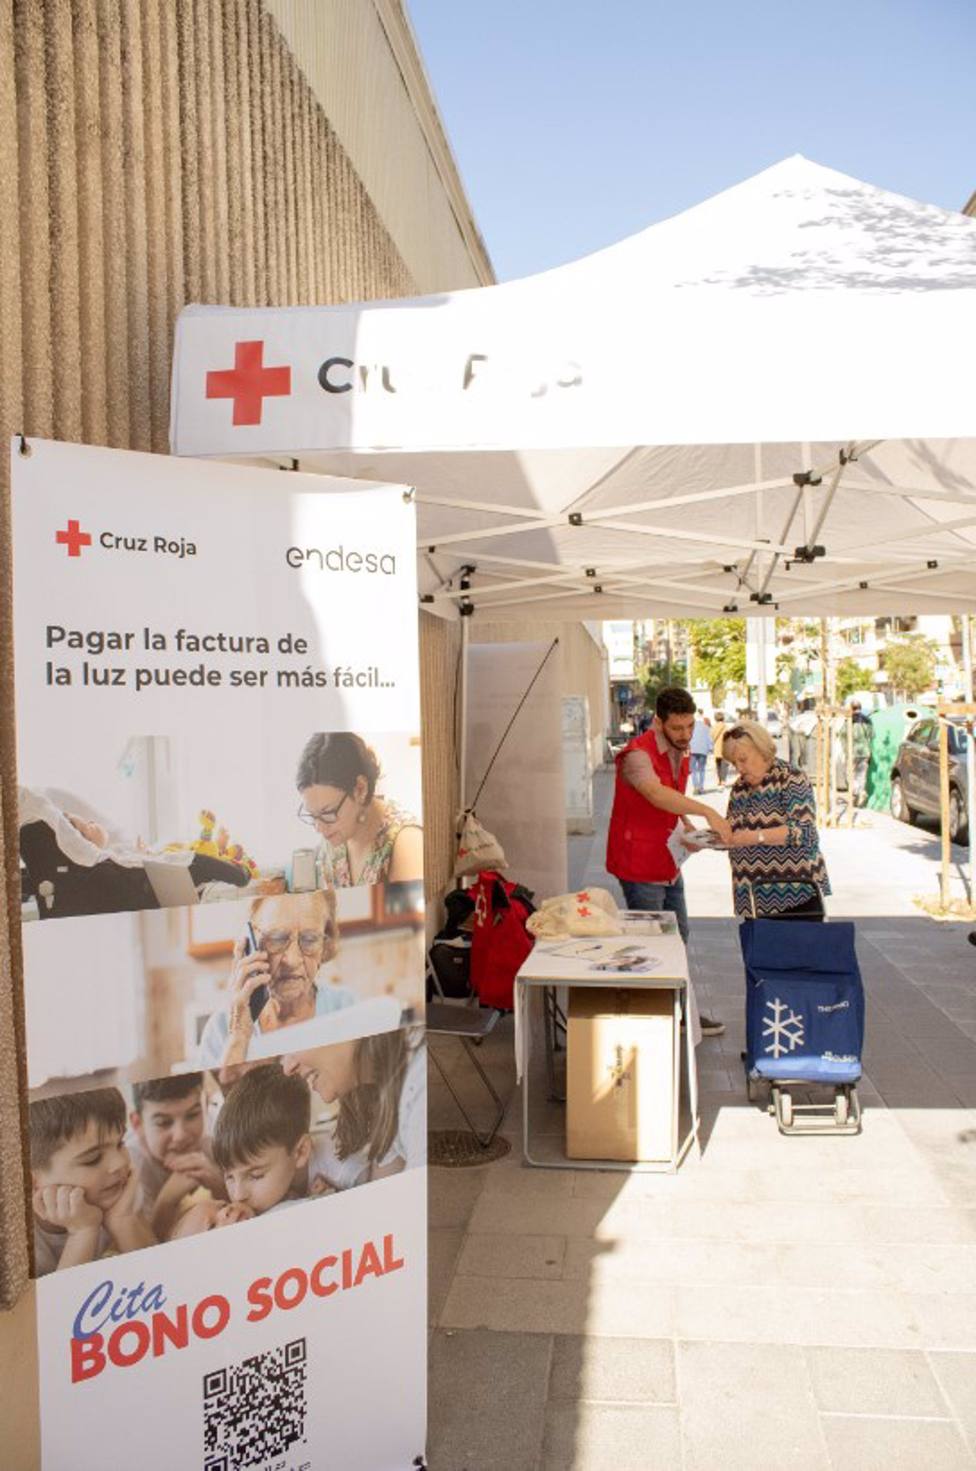 Granada.- Endesa lanza en Granada con Cruz Roja la campaÃ±a Cita bono social